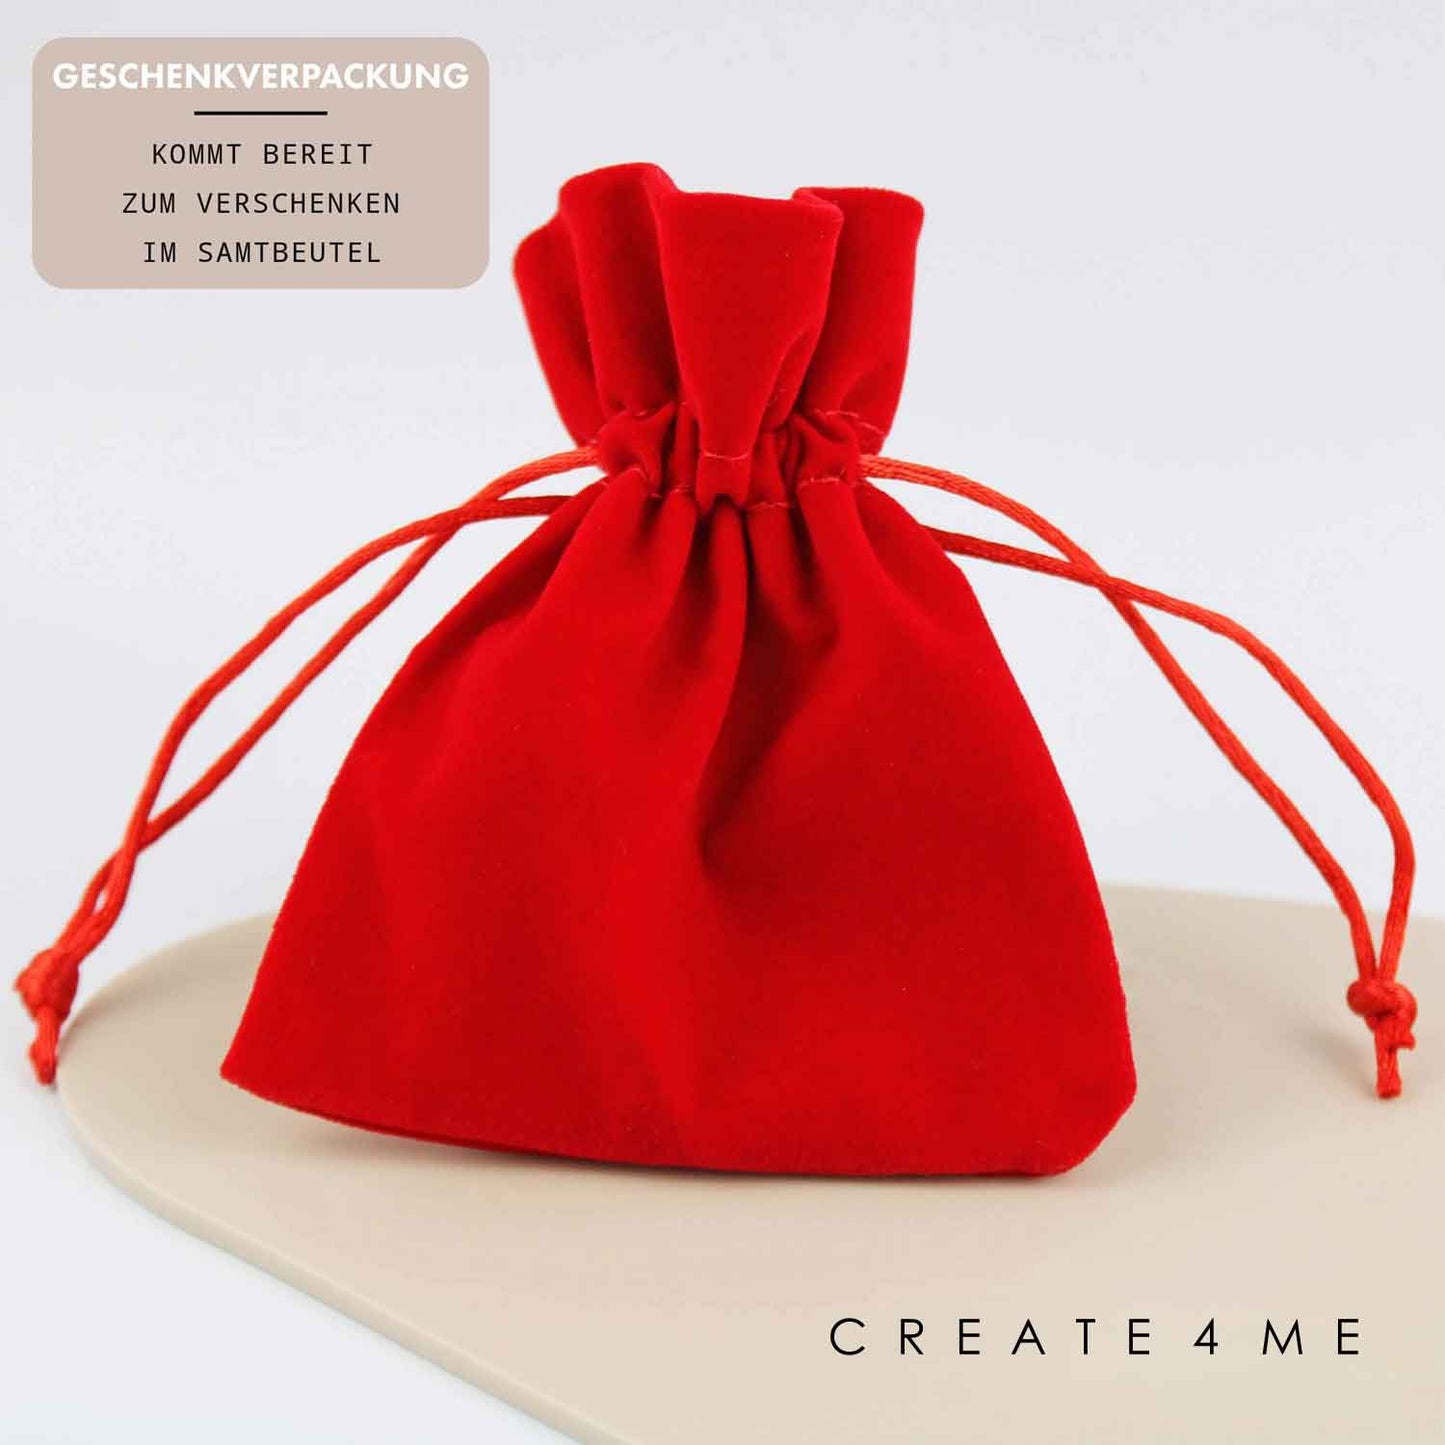 Geschenkverpackung Traumfrau von - Schlüsselanhänger personalisiert Create4me